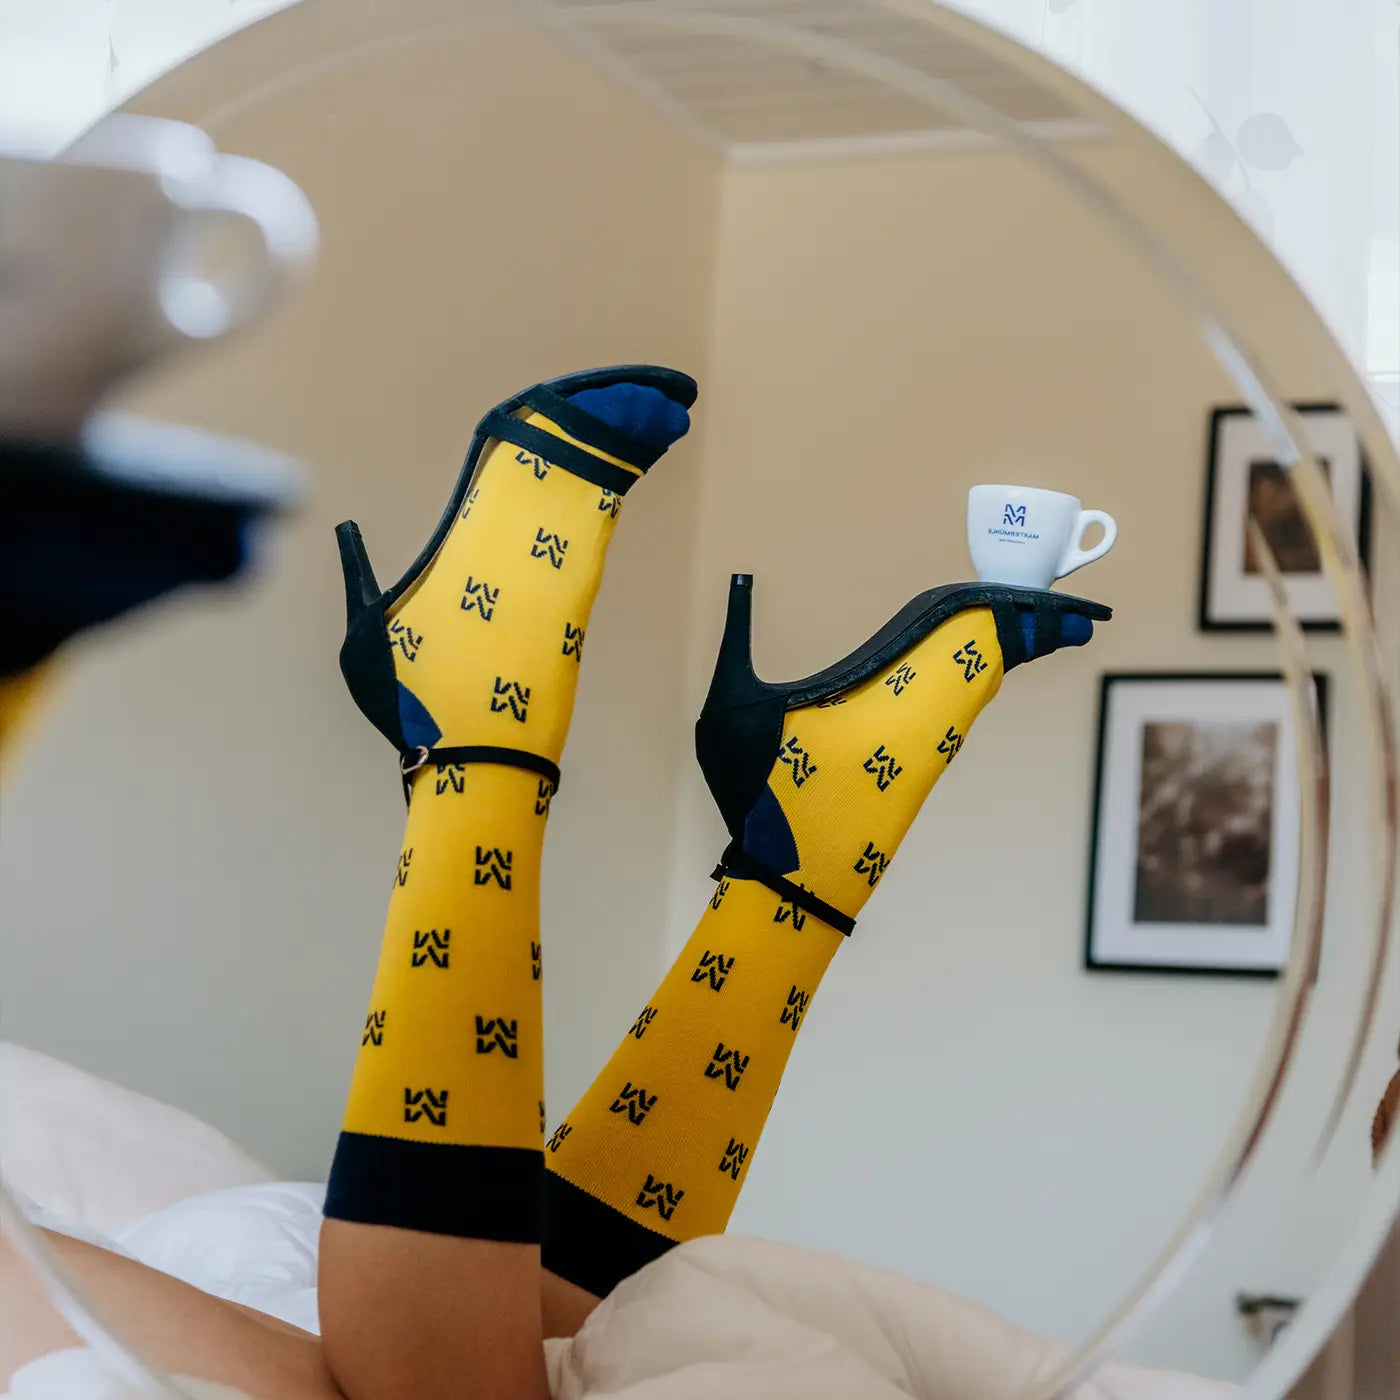 Ein Bildausschnitt von den Füßen einer Frau mit hohen Martermühle Socken und Stilettos auf denen eine Espressotasse balanciert wird